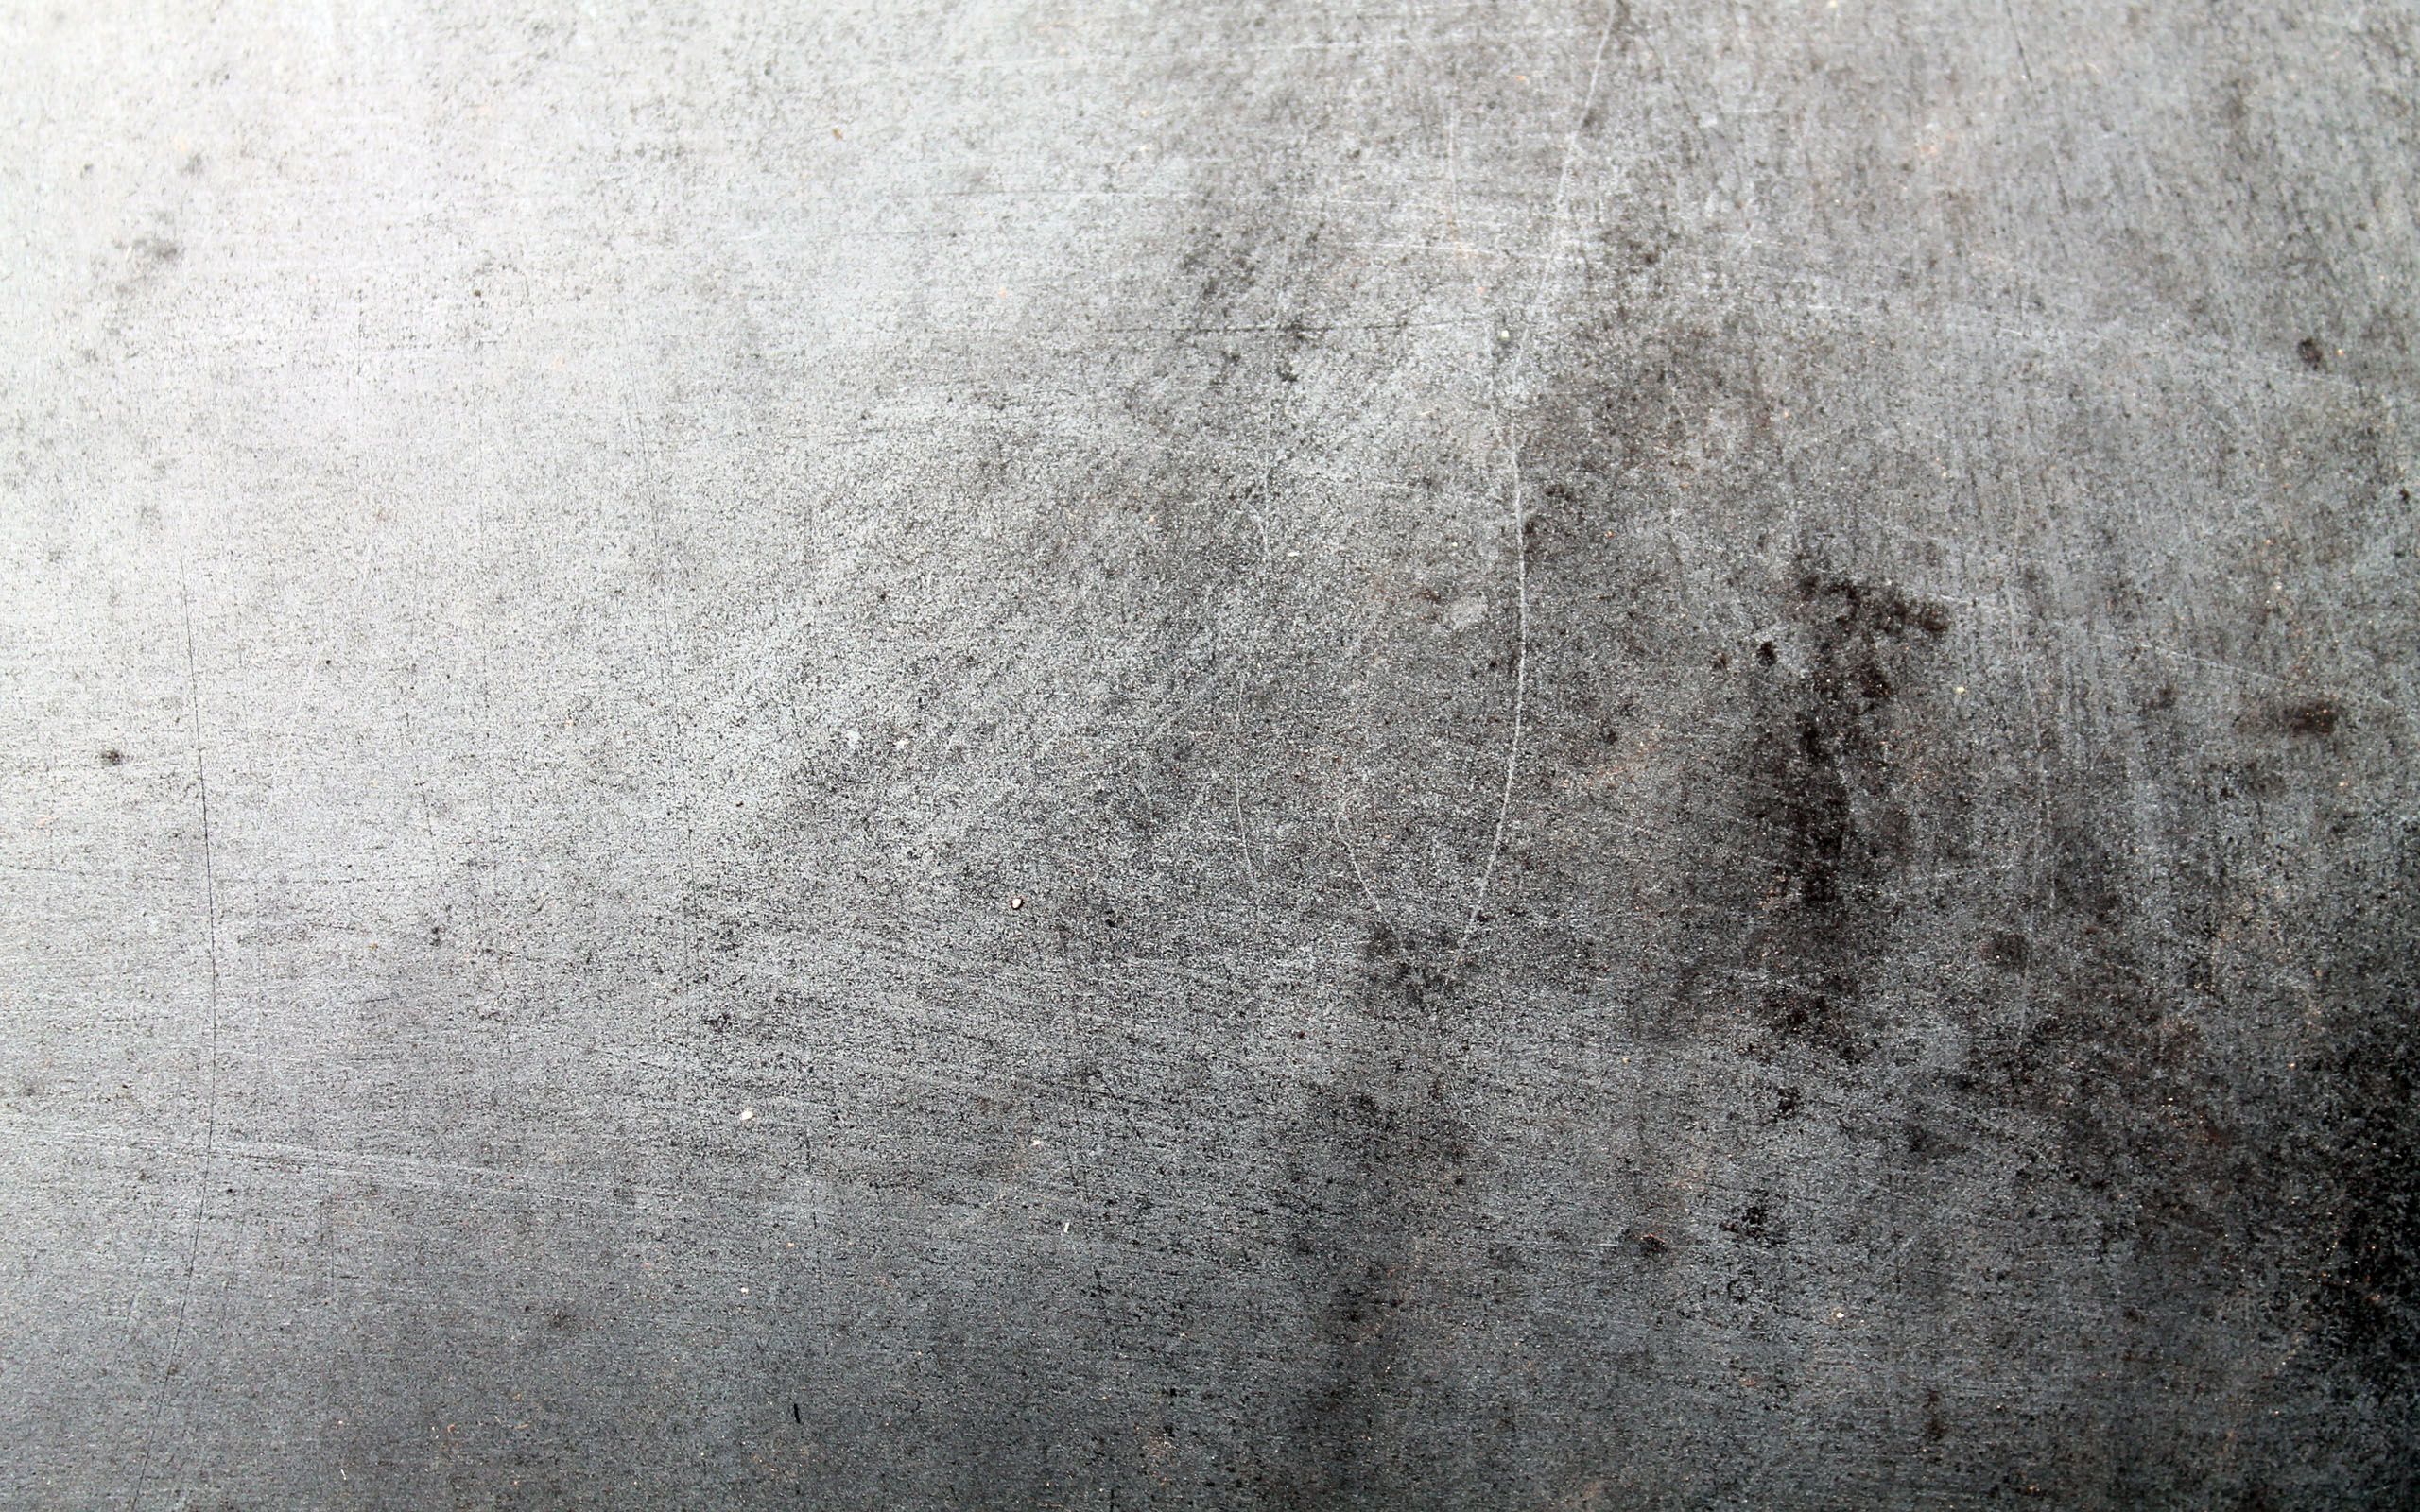 Scratched concrete photo